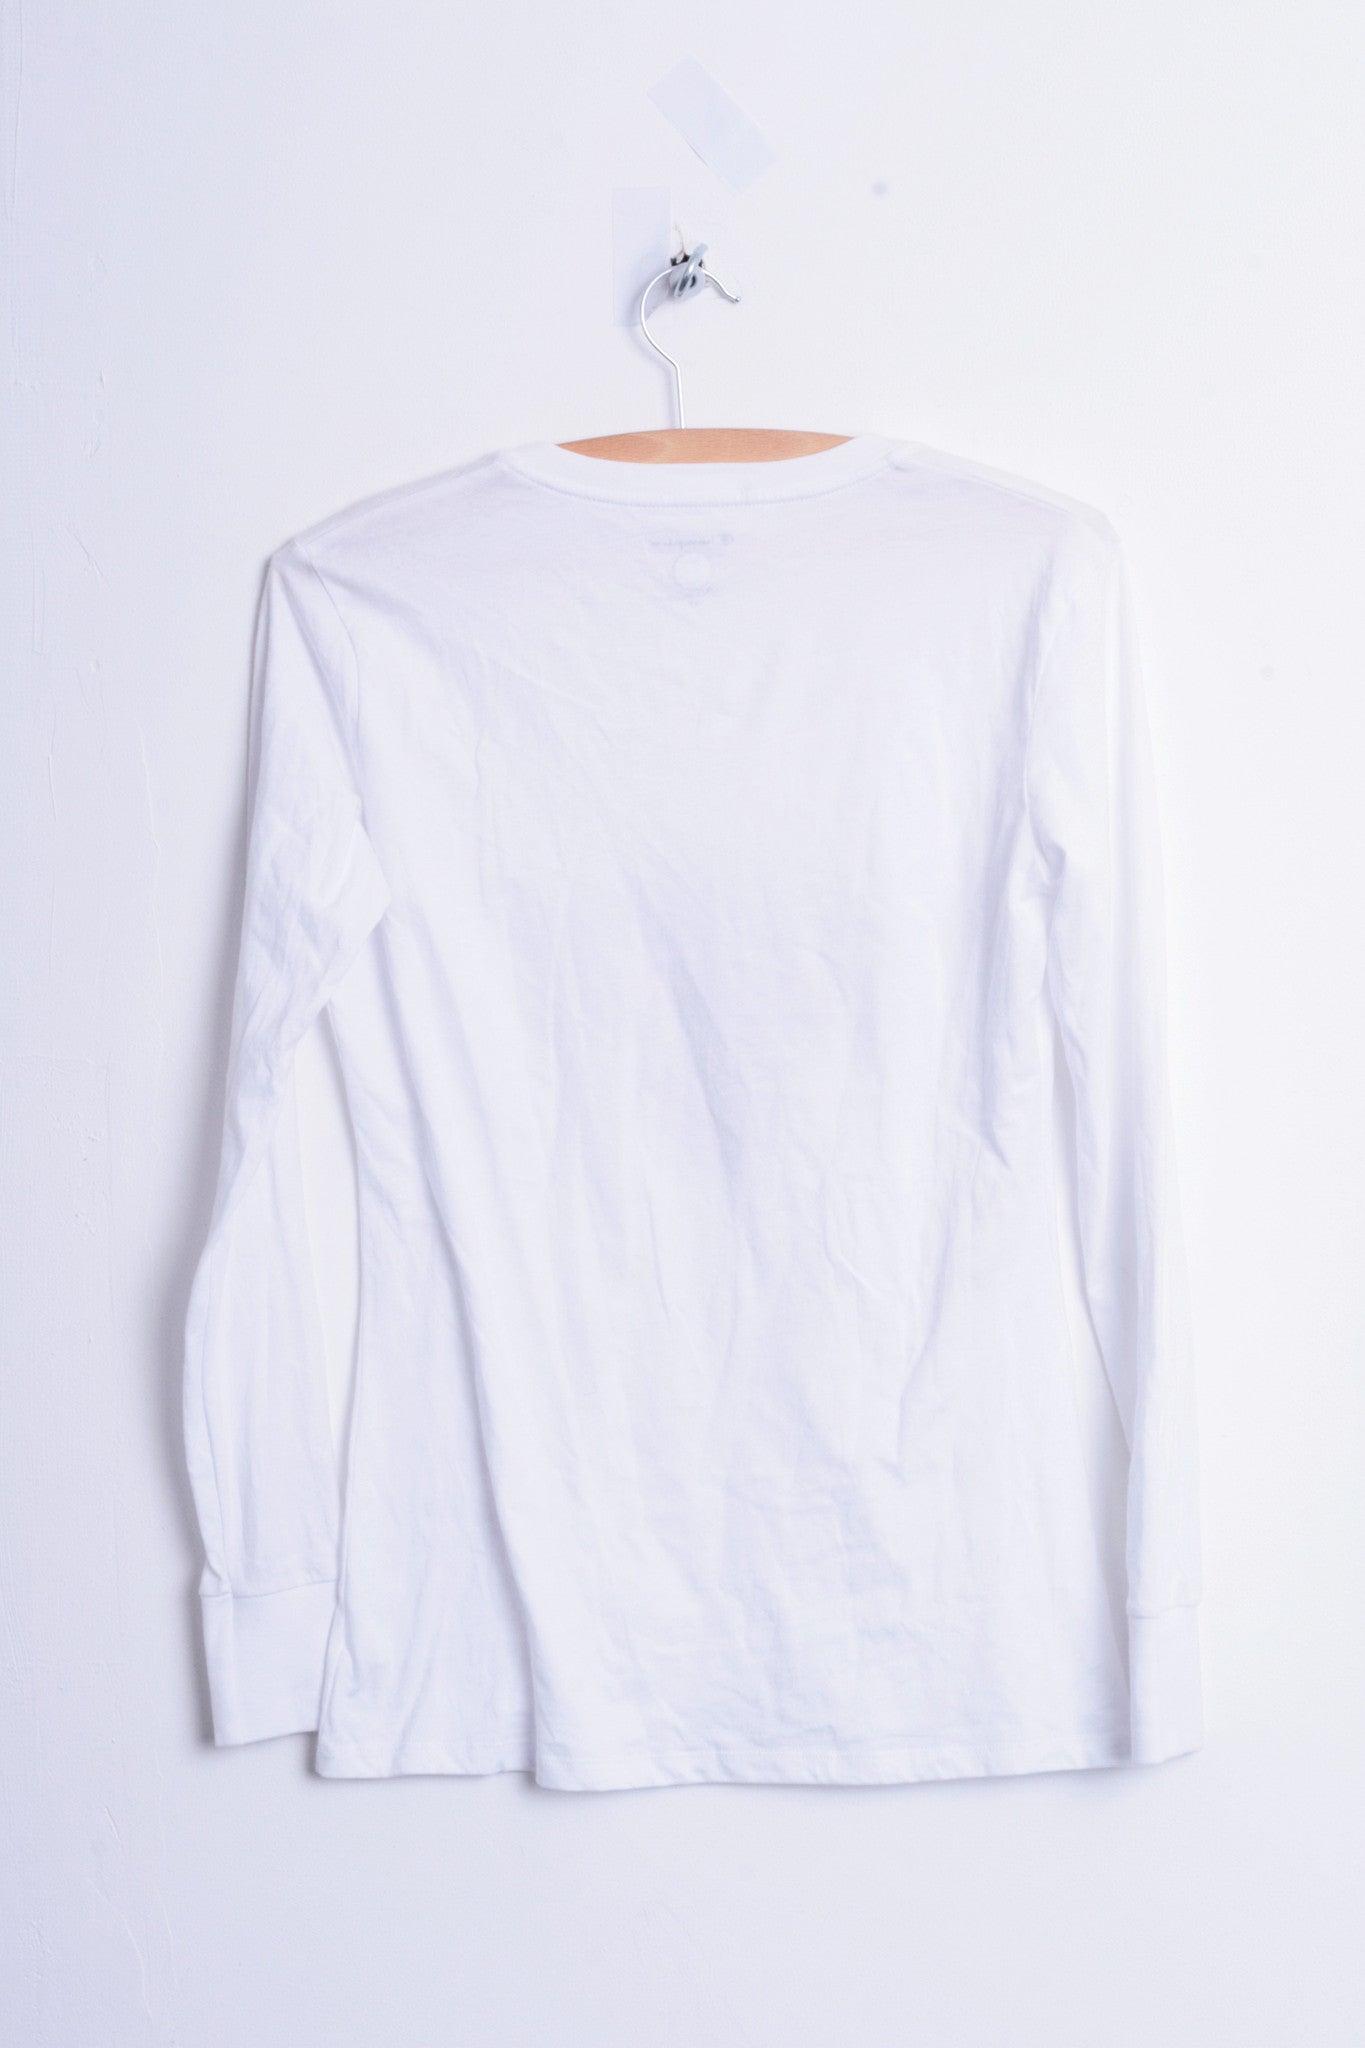 Champion St. Lawrence Saints Womens XS Shirt Blouse V Neck White Cotton - RetrospectClothes